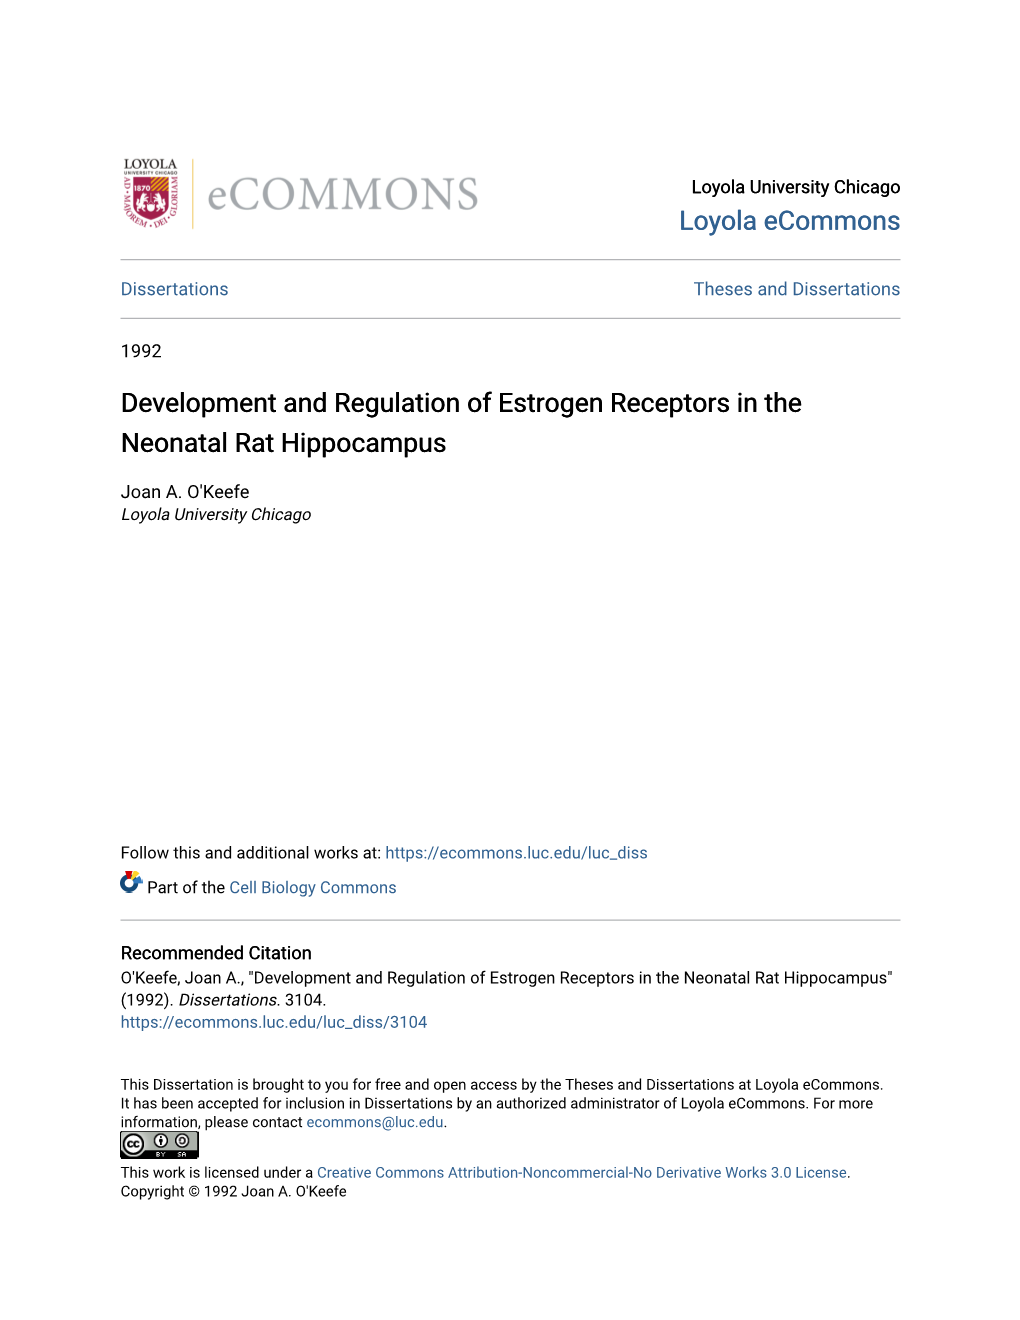 Development and Regulation of Estrogen Receptors in the Neonatal Rat Hippocampus